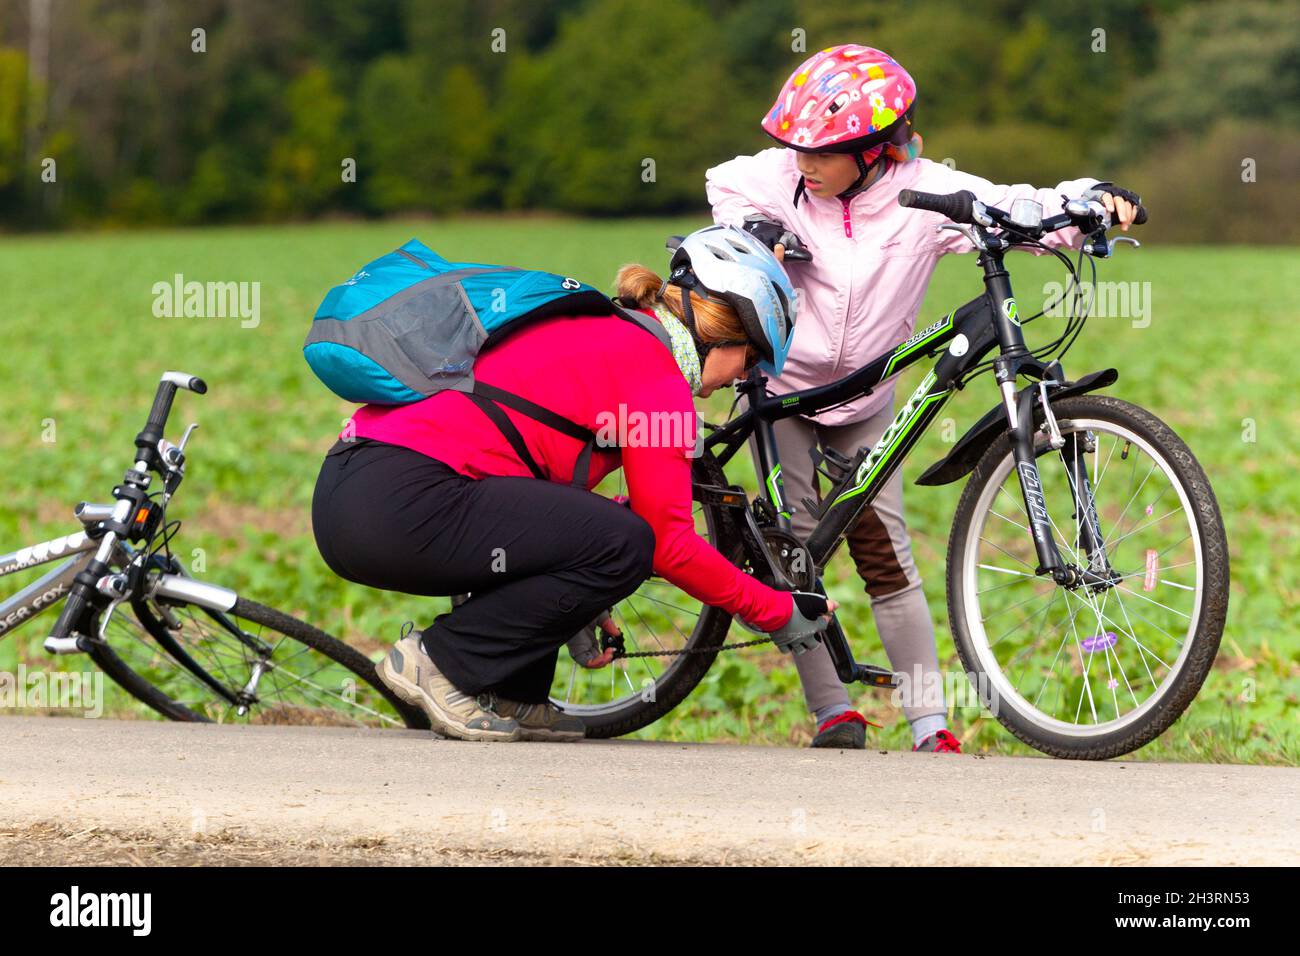 Frau, die hilft, eine gefallene Kette anzuziehen, Fahrrad zu reparieren, ein Kind im Helm, Fahrrad Stockfoto